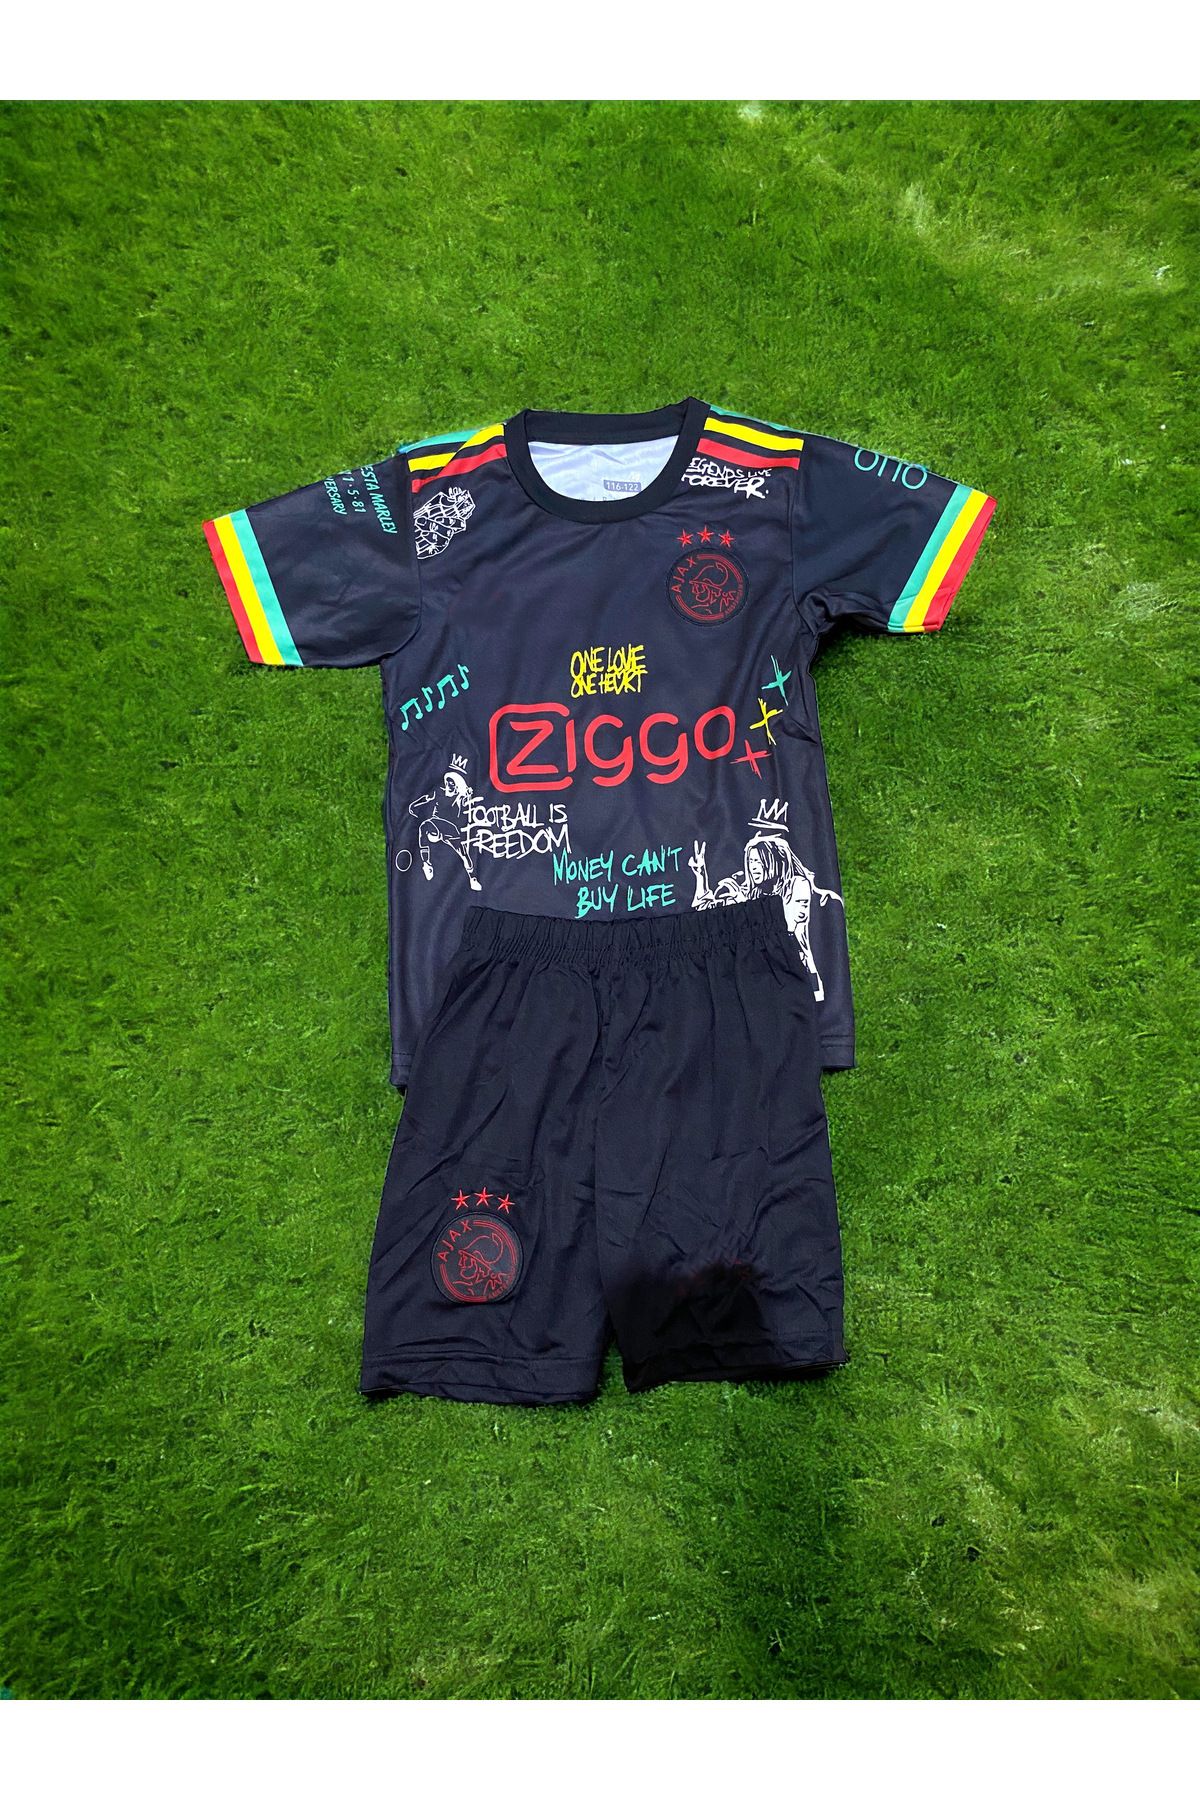 HoliganSport Yeni Sezon Ajax Bob Marley Tasarımlı Çocuk Forma Takımı